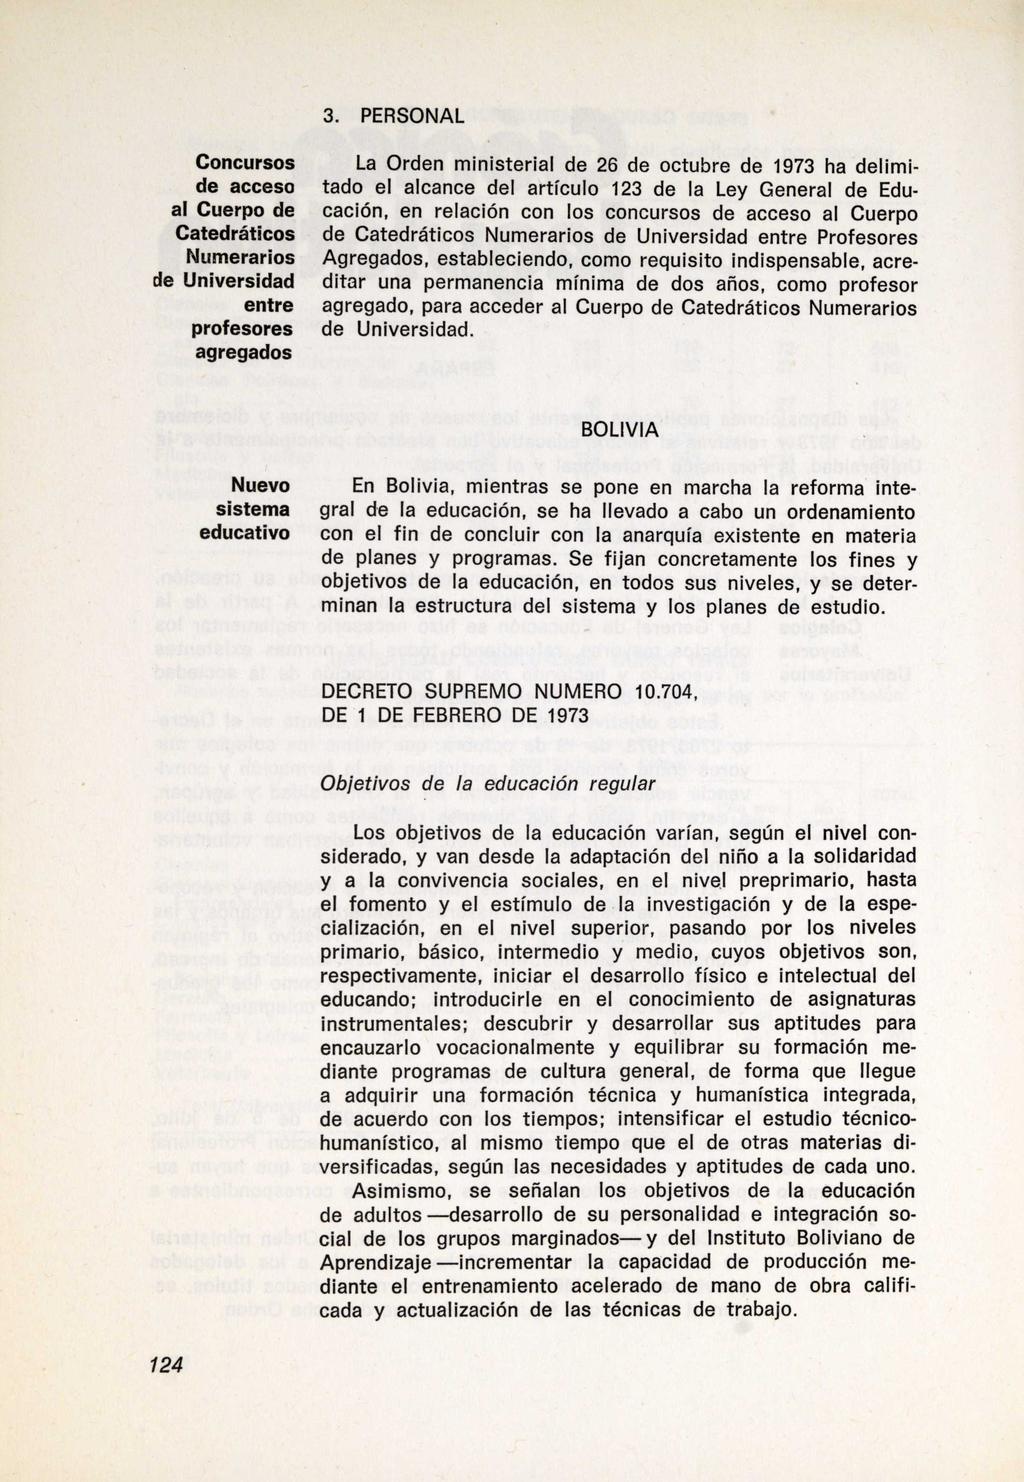 3. PERSONAL Concursos de acceso al Cuerpo de Catedráticos Numerarios de ljniversidad entre profesores agregados La Orden ministerial de 26 de octubre de 1973 ha delimitado el alcance del artículo 123